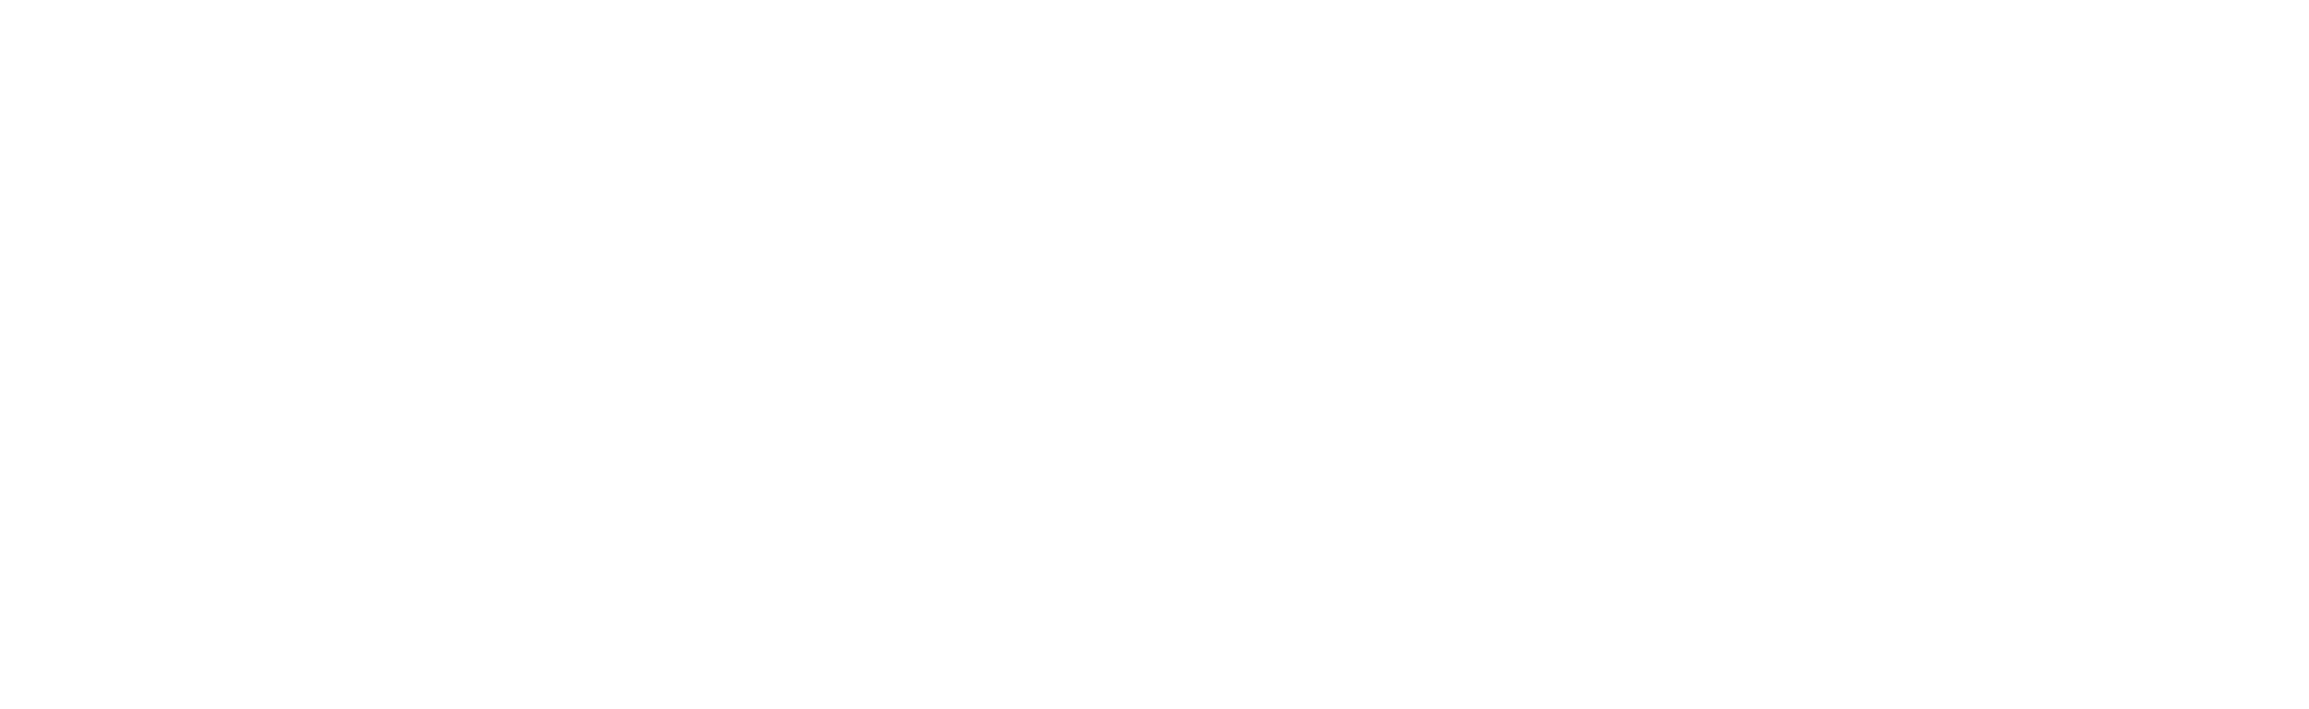 Felidarity